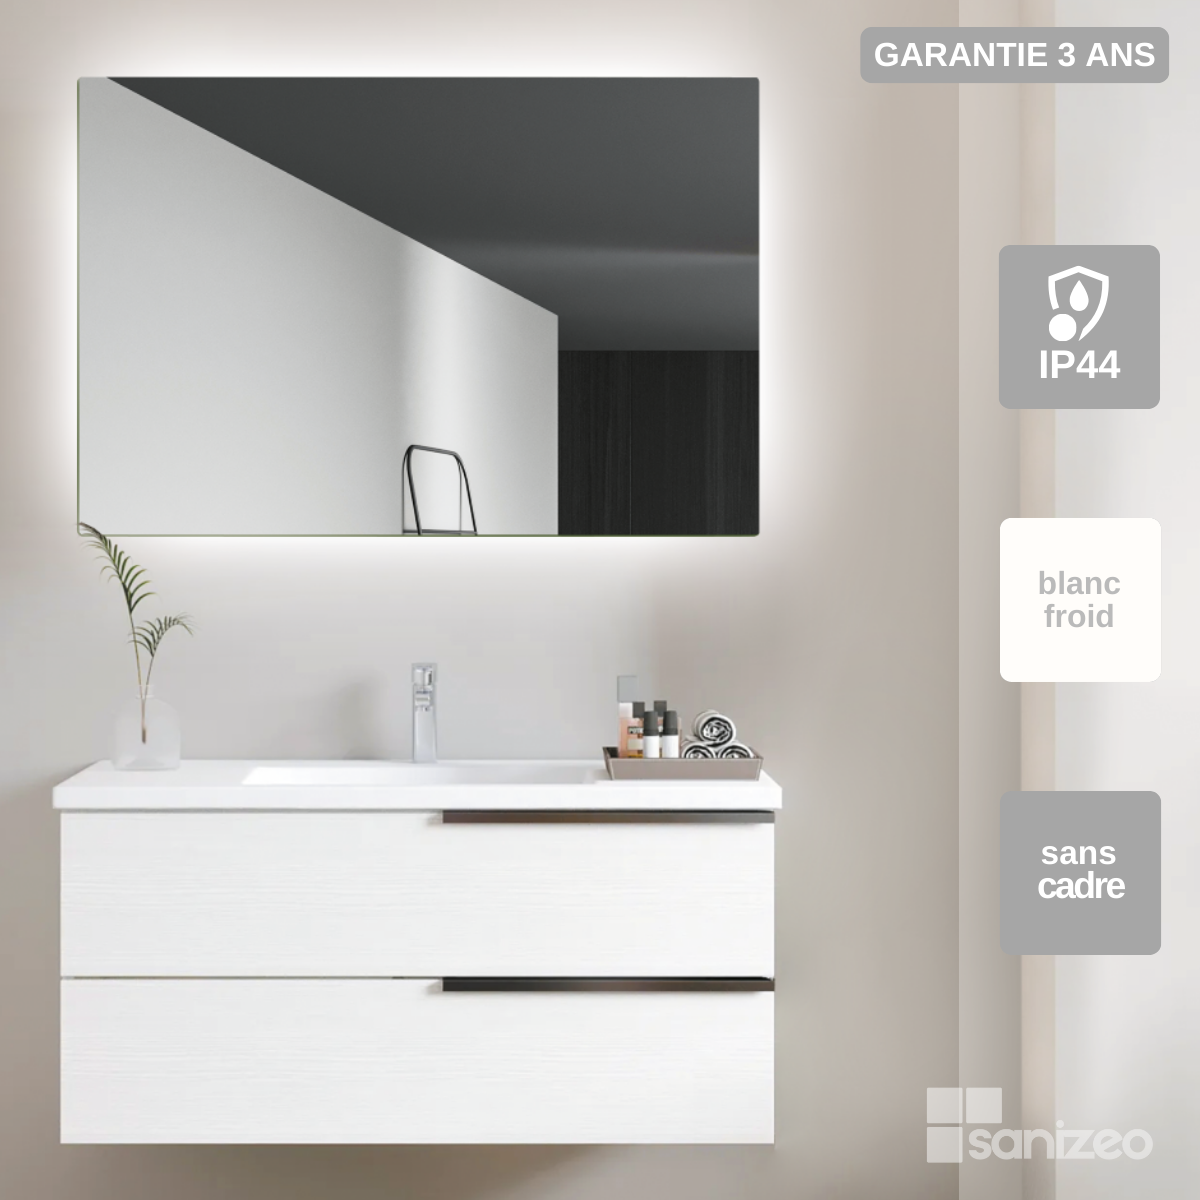 Espejo de baño Led cuadrado - medida 100 x 80 cm - Retroluminación por LED  con IRC >80 – Sensor antivaho – Sensor on/off - Luz fria – Modelo ITALIA